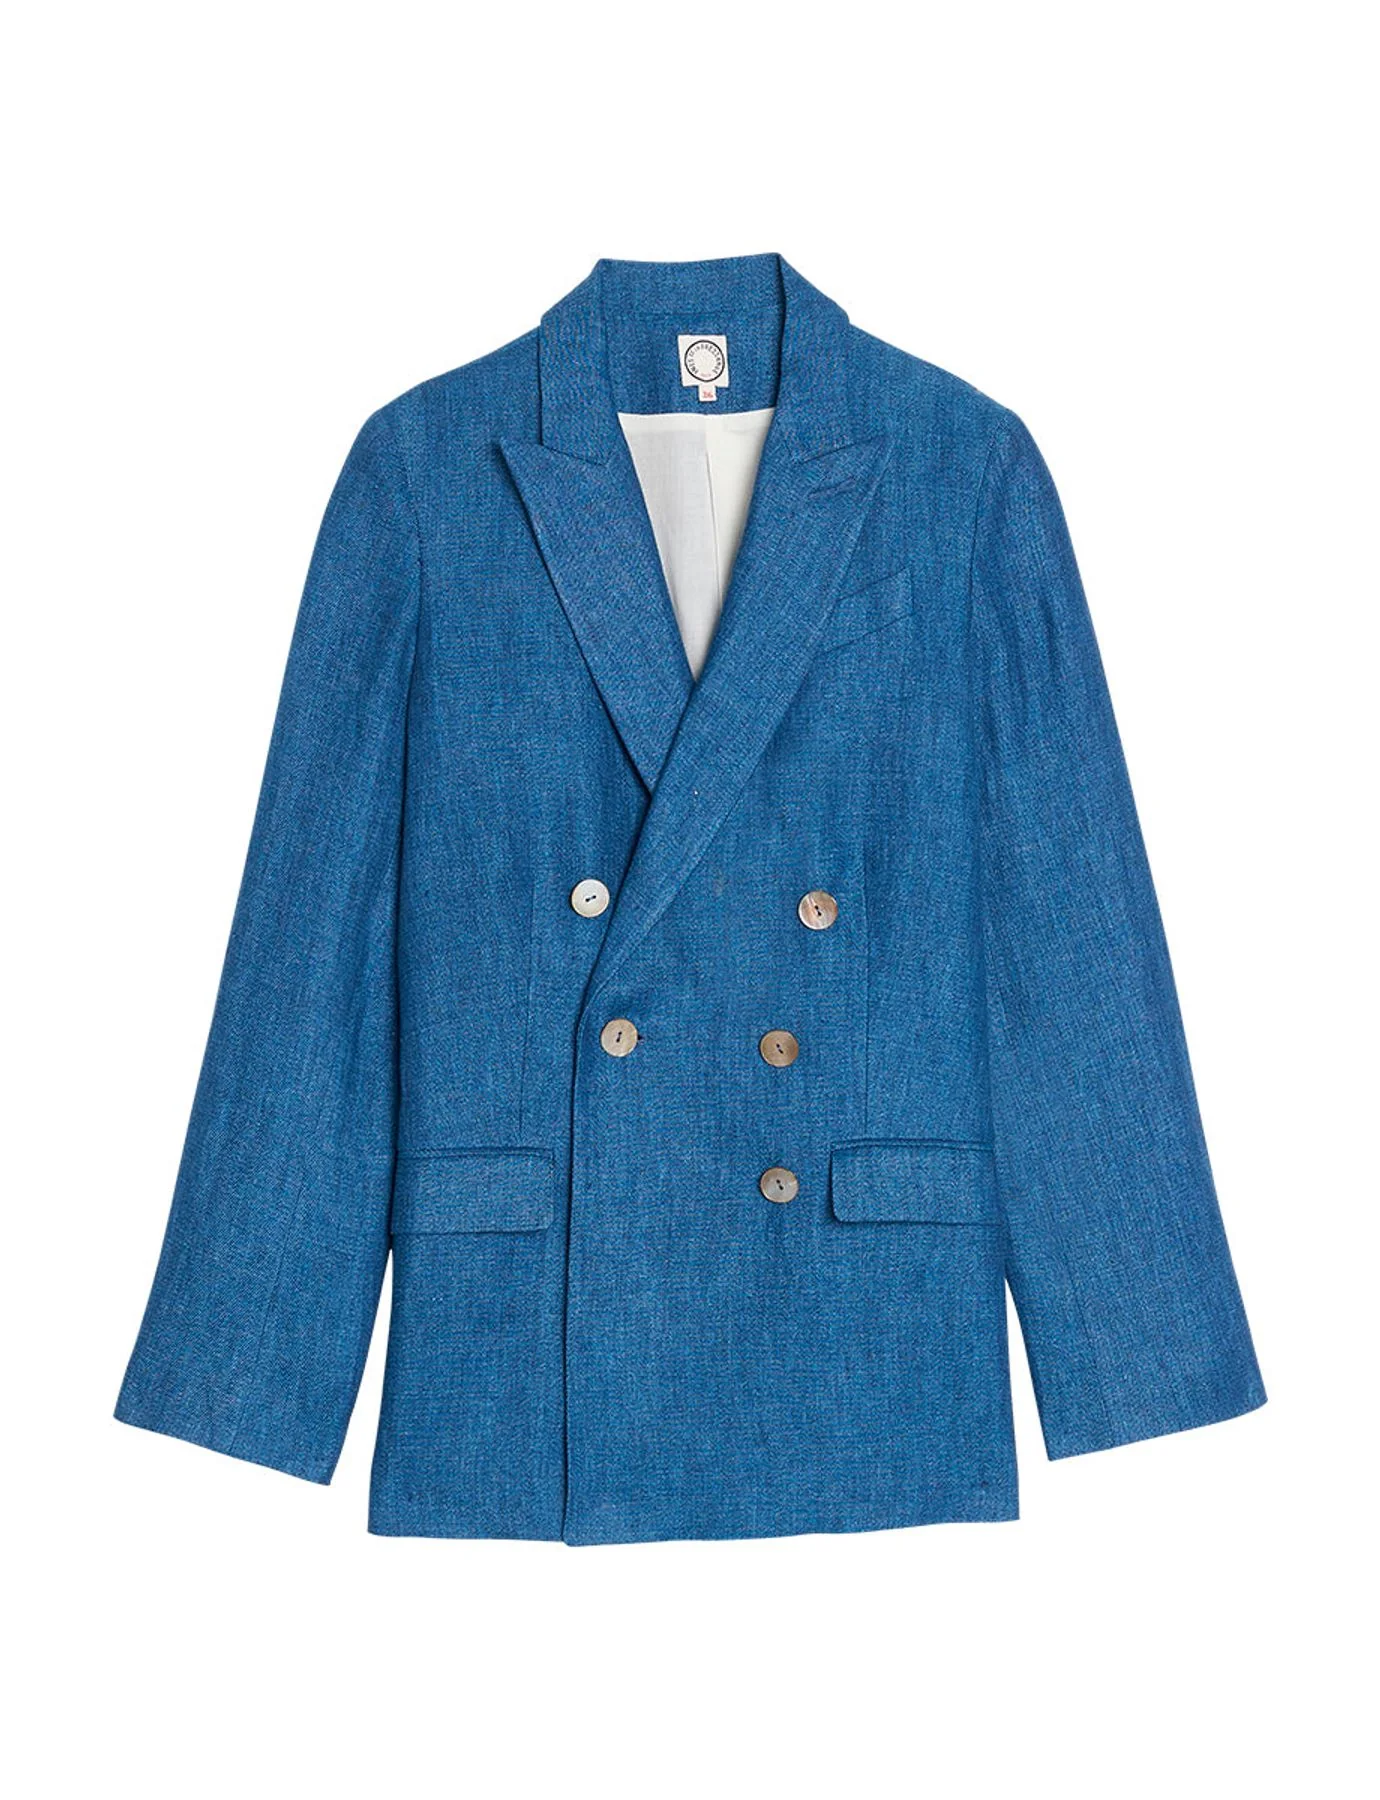 jacket-ezio-blue-denim-lin